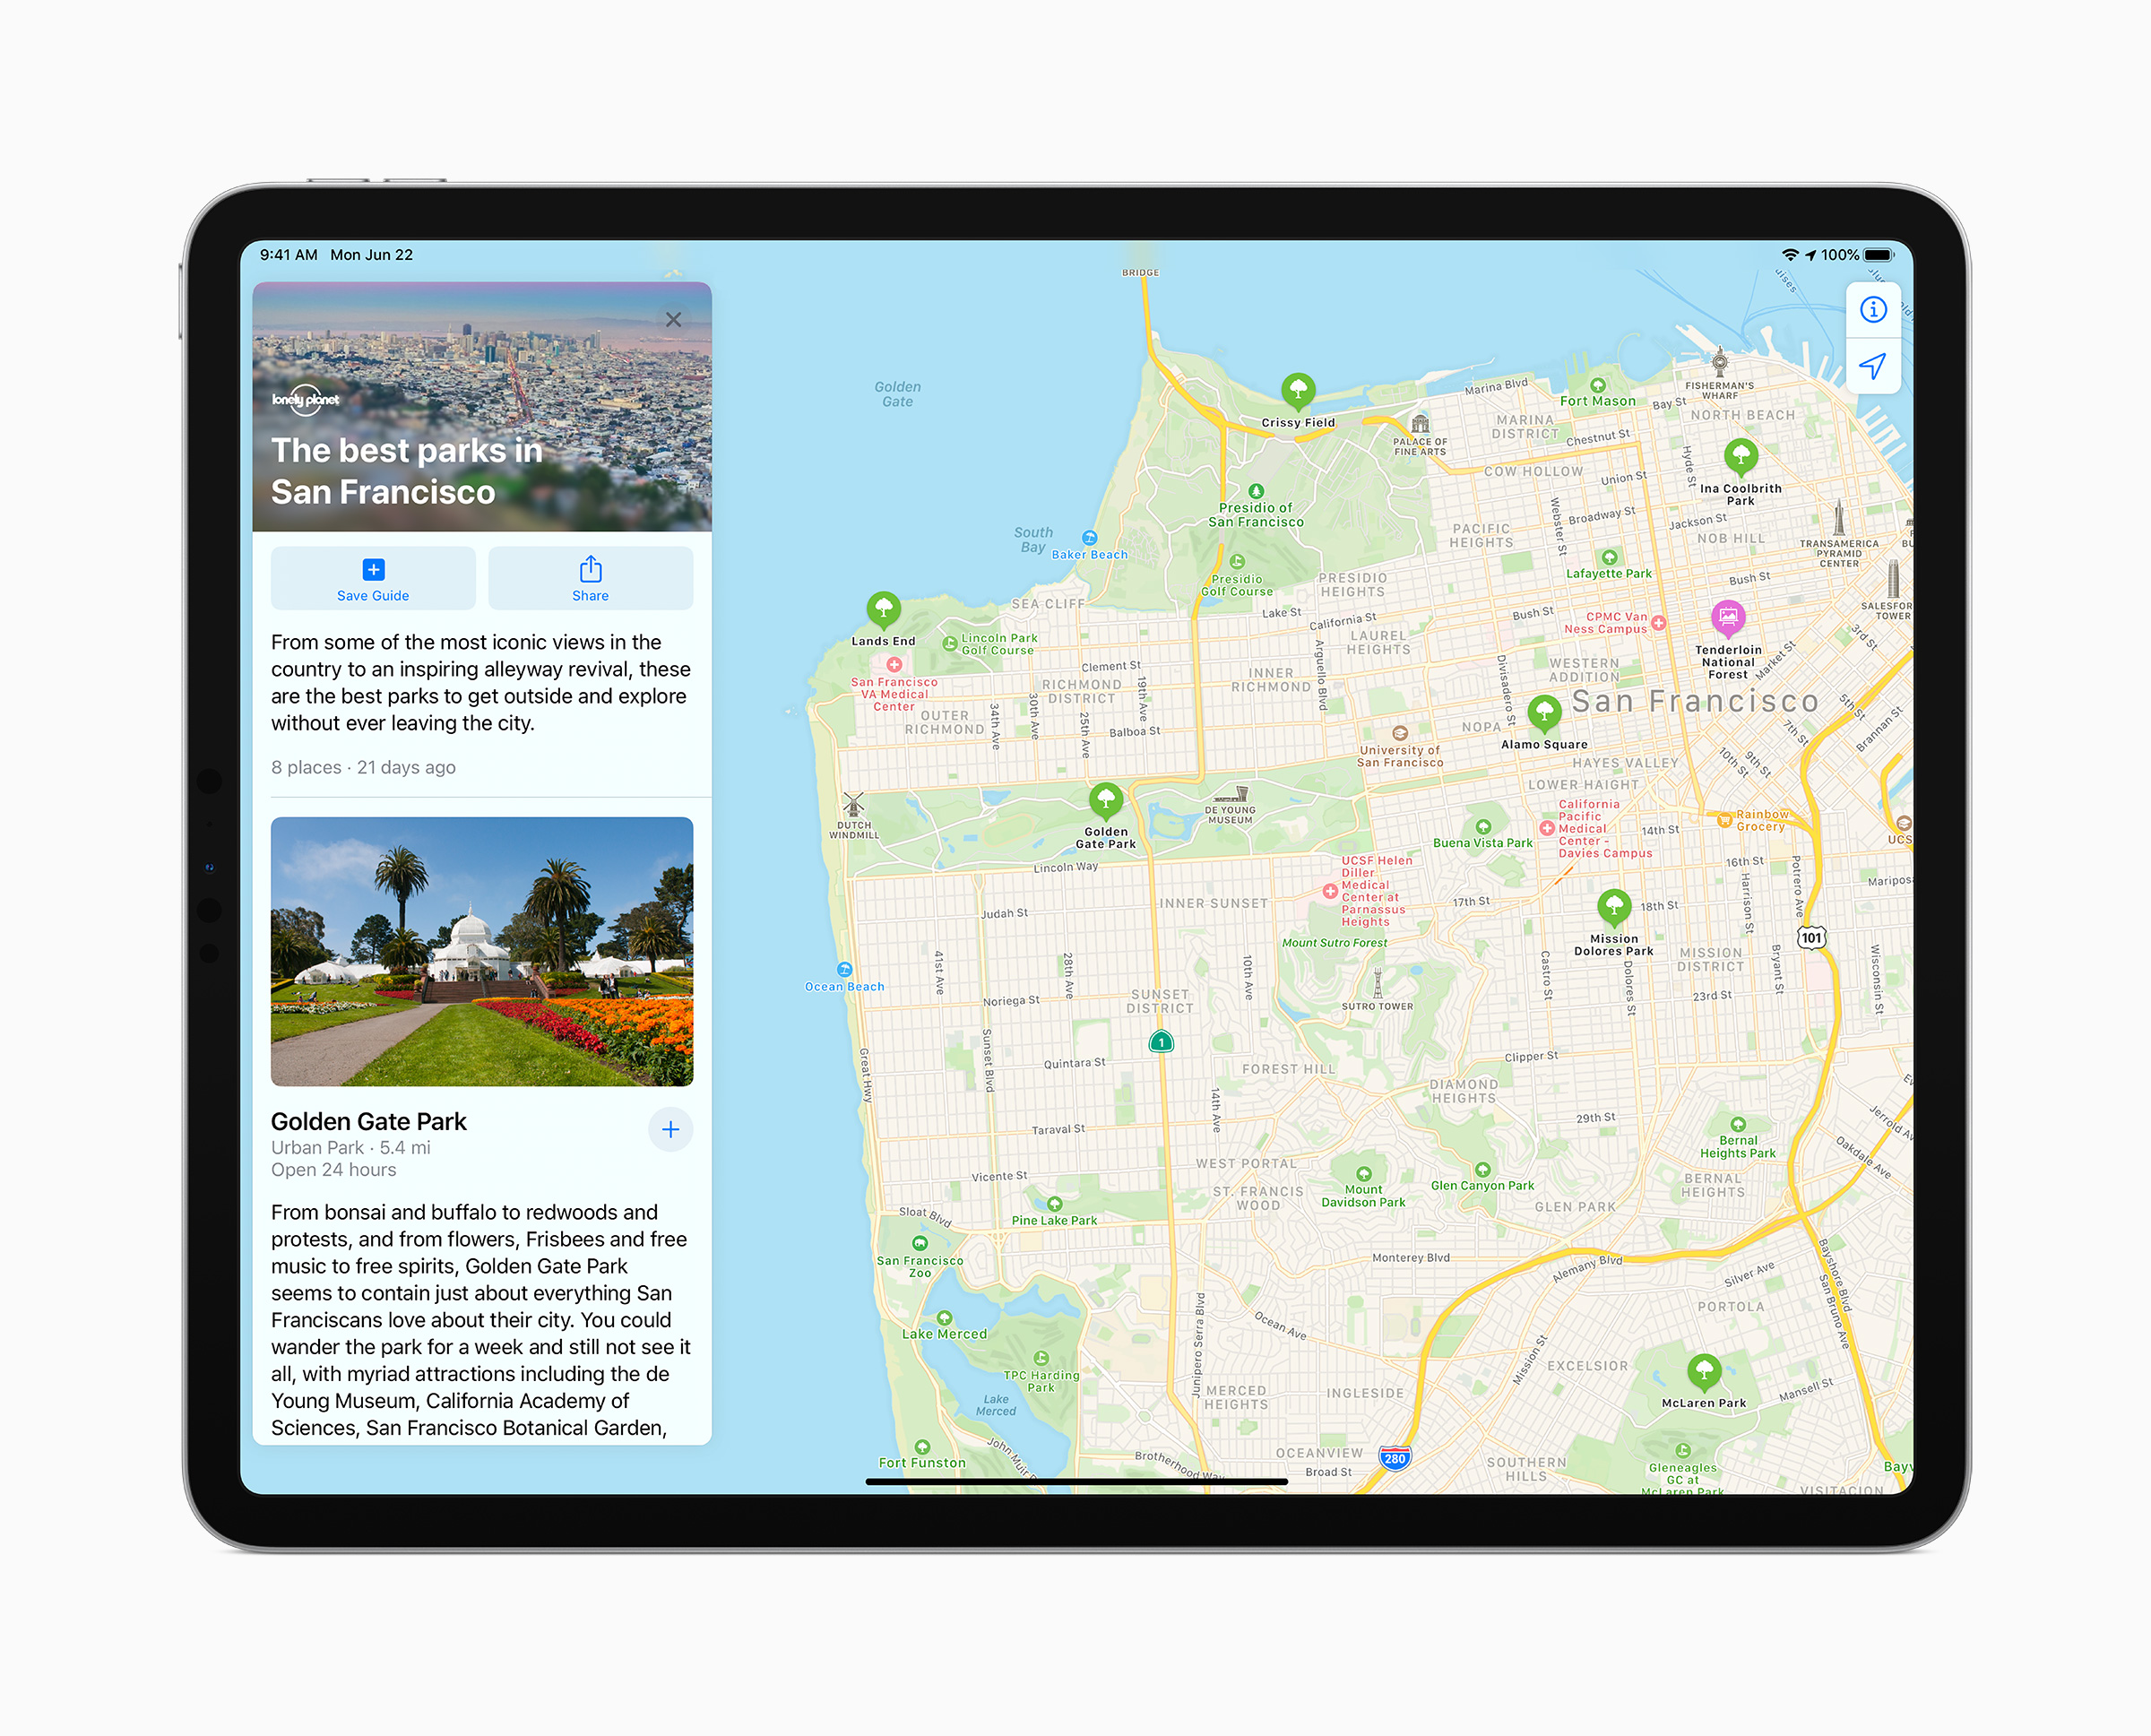 iPadOS 14 maps update